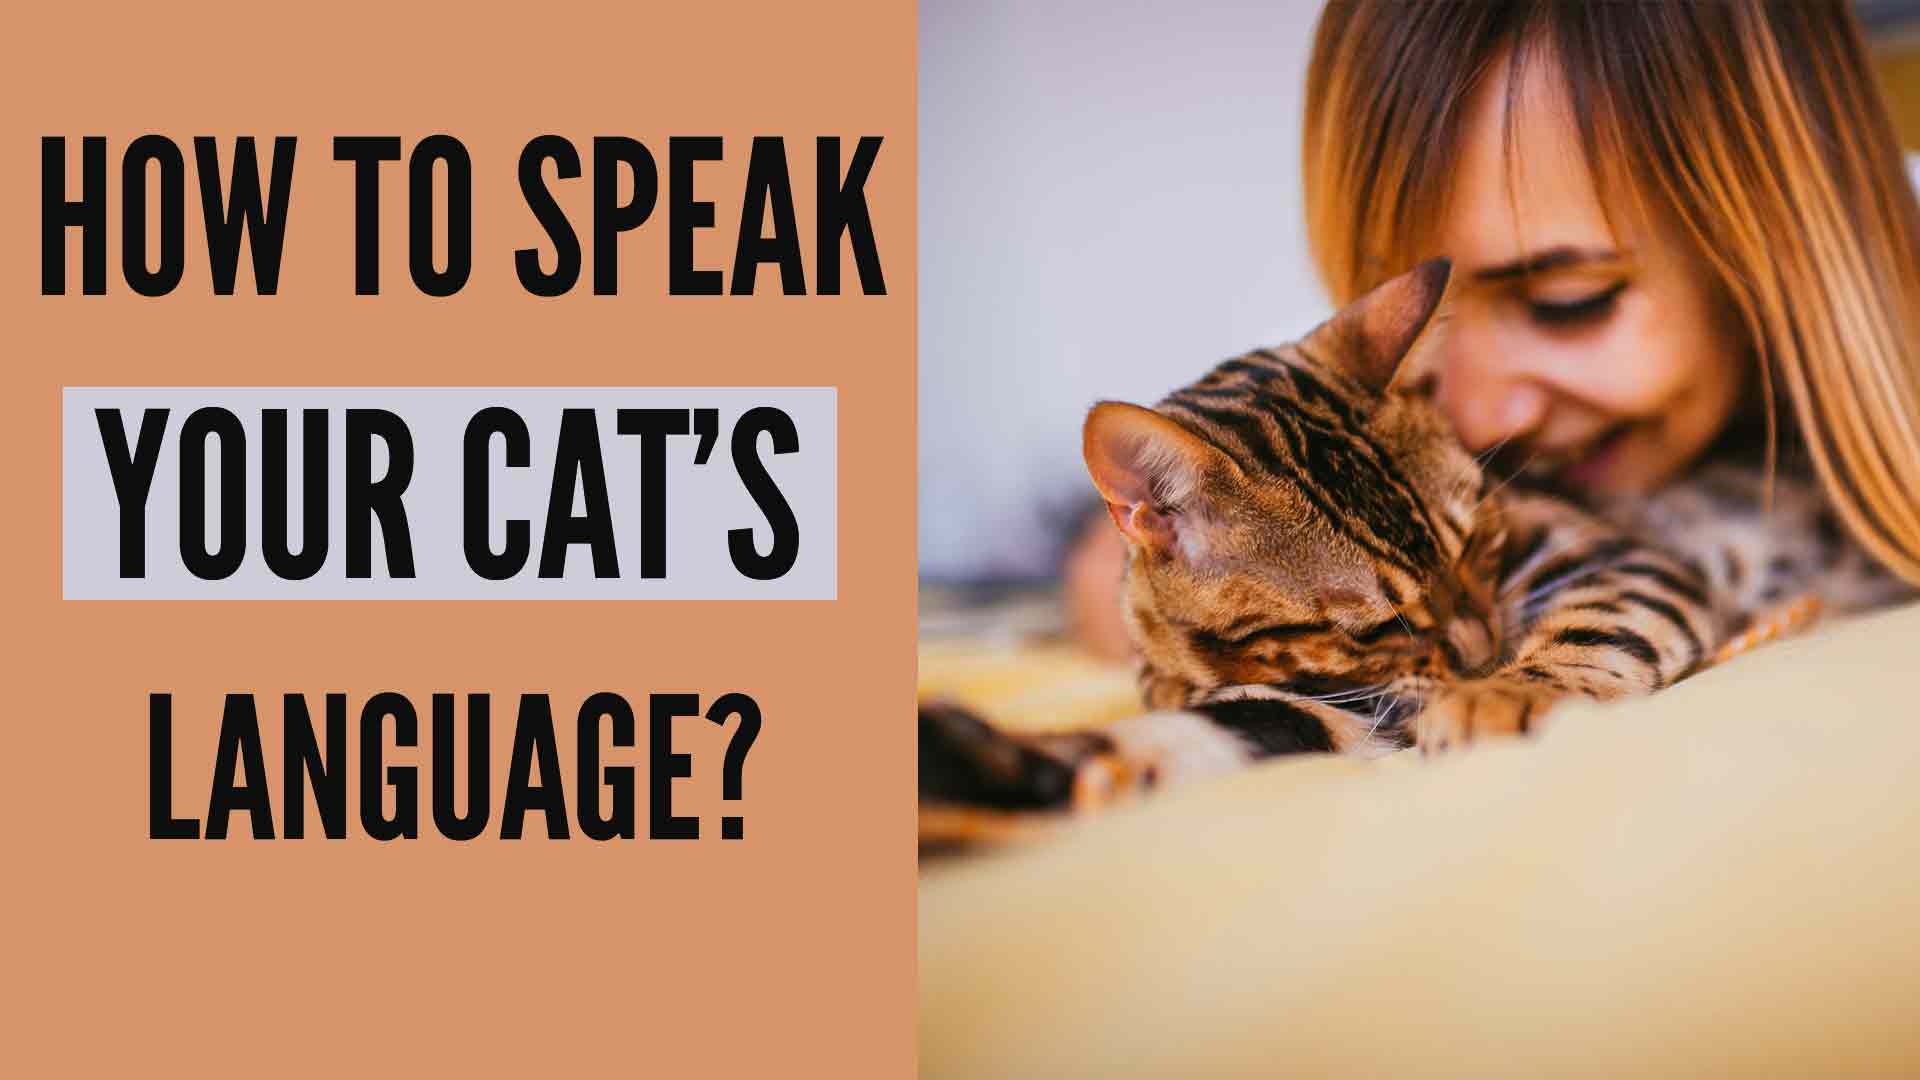 how to speak cat - understanding cat language